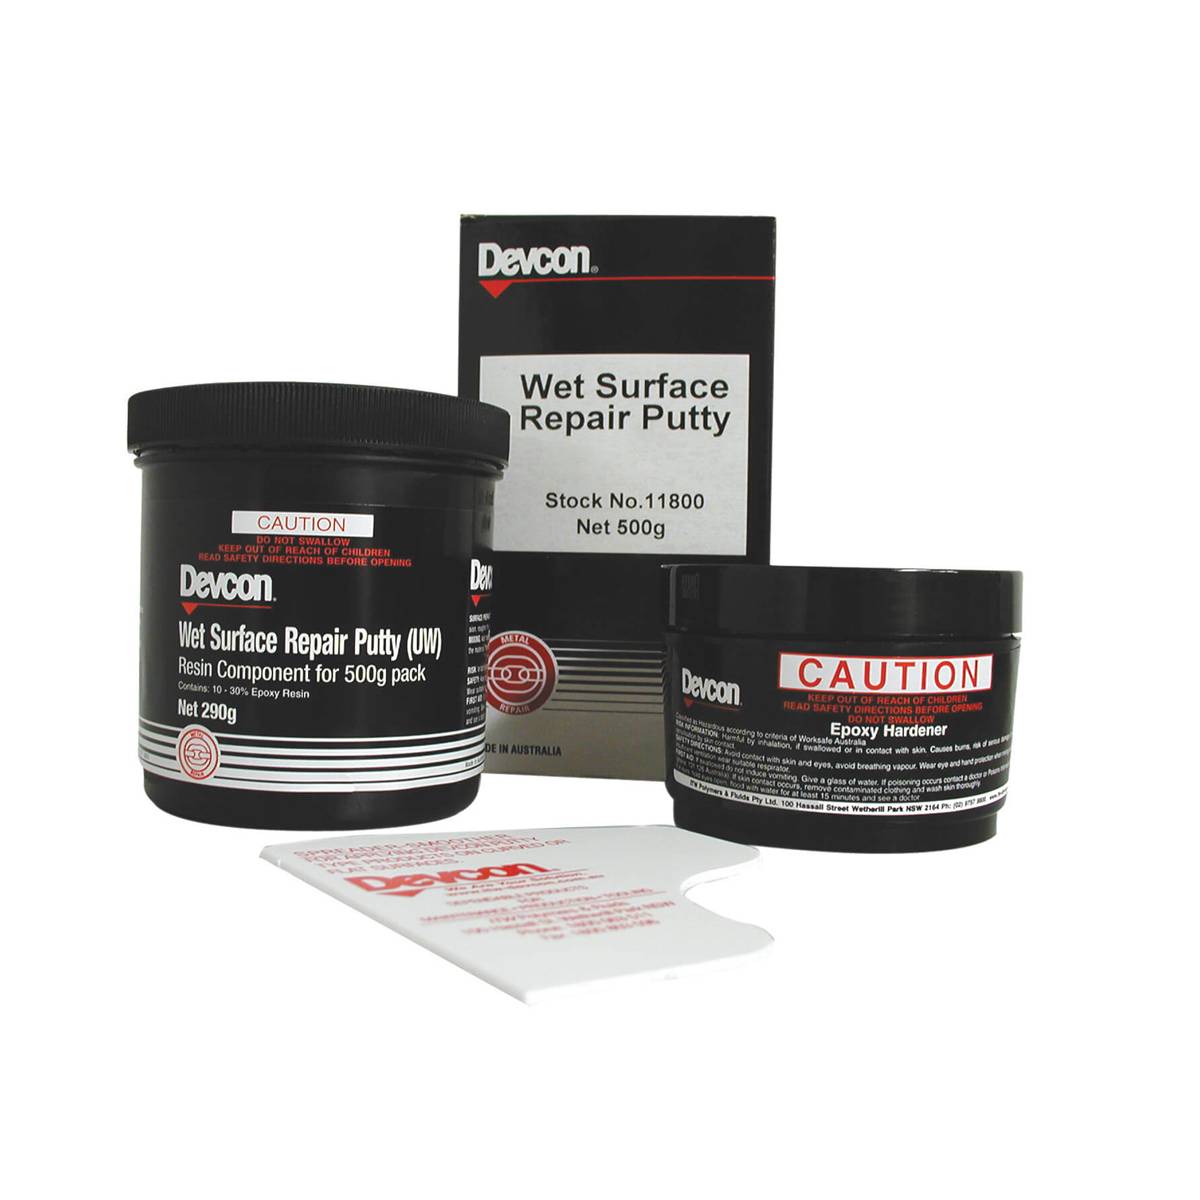 Devcon Wet Surface Repair Putty UW, эпоксидная мастика для работы в влажных условиях и под водой